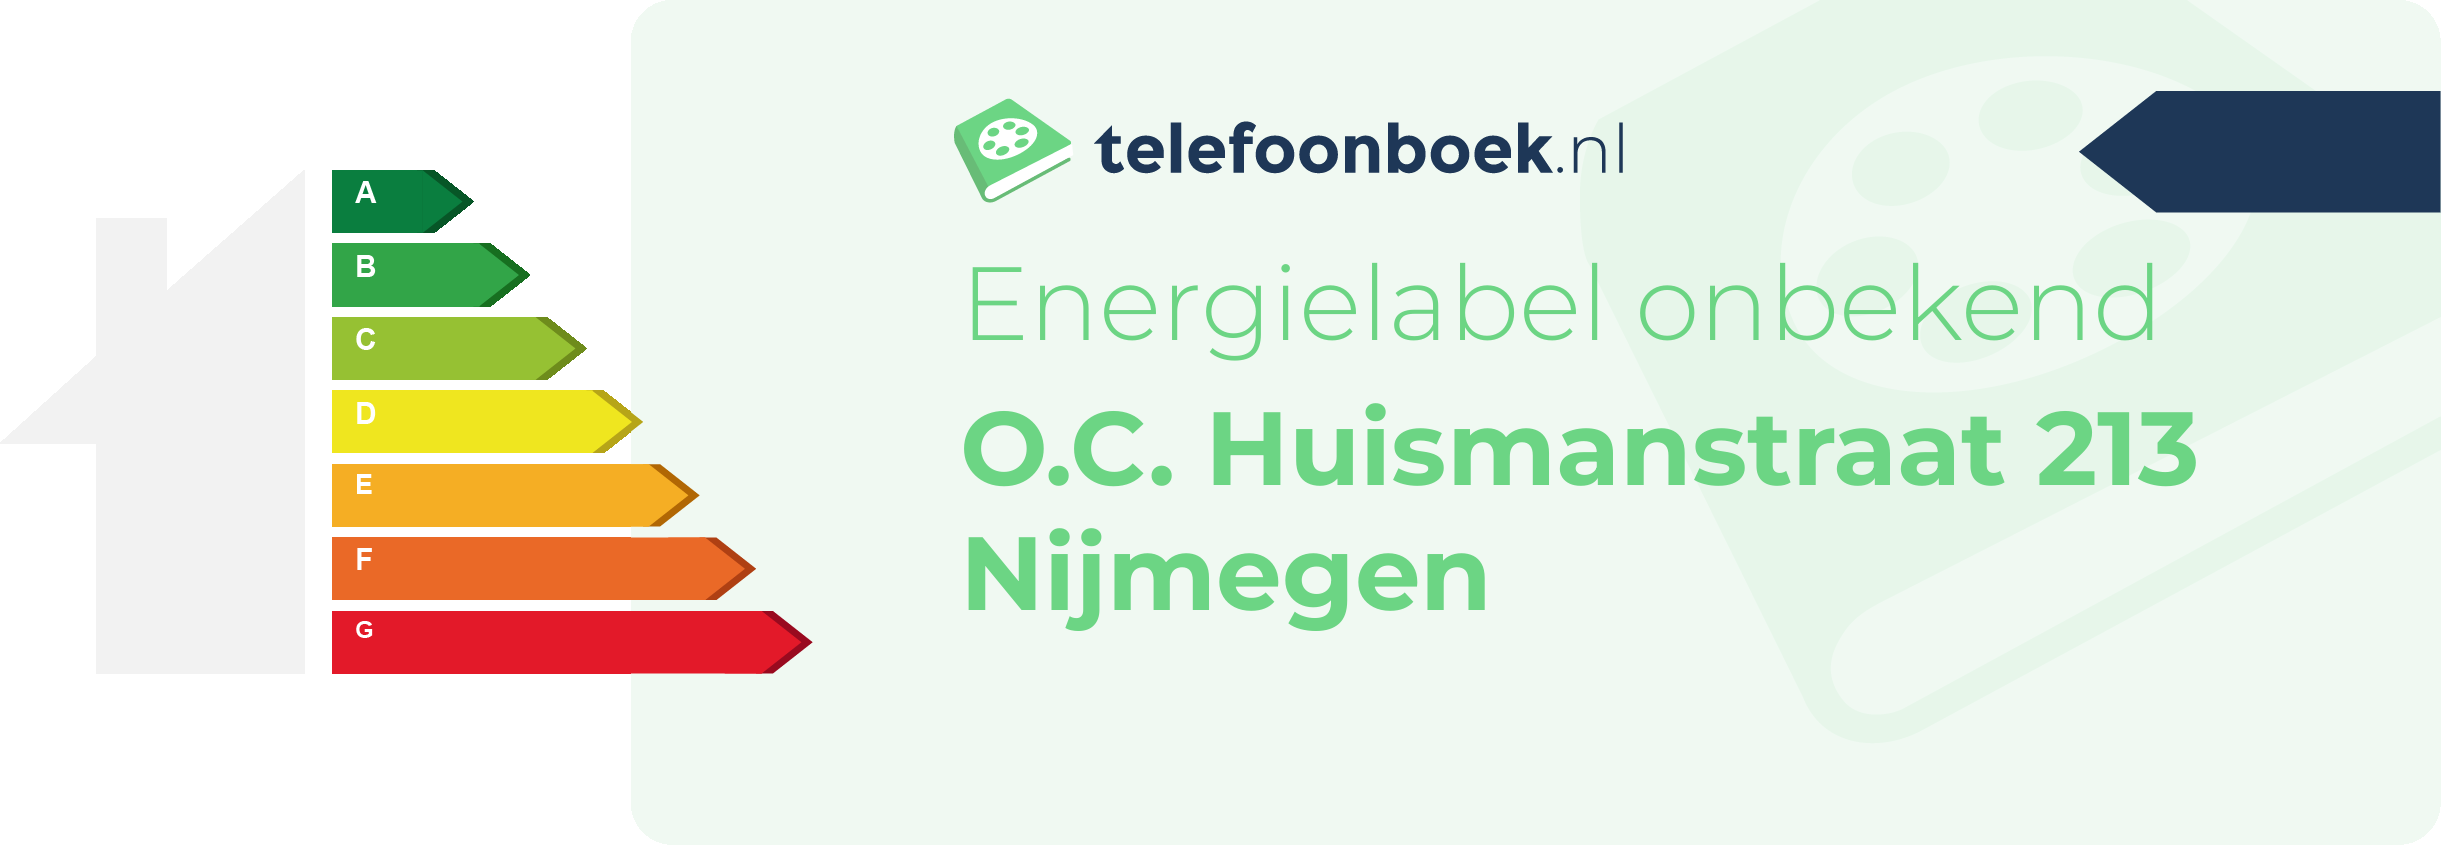 Energielabel O.C. Huismanstraat 213 Nijmegen